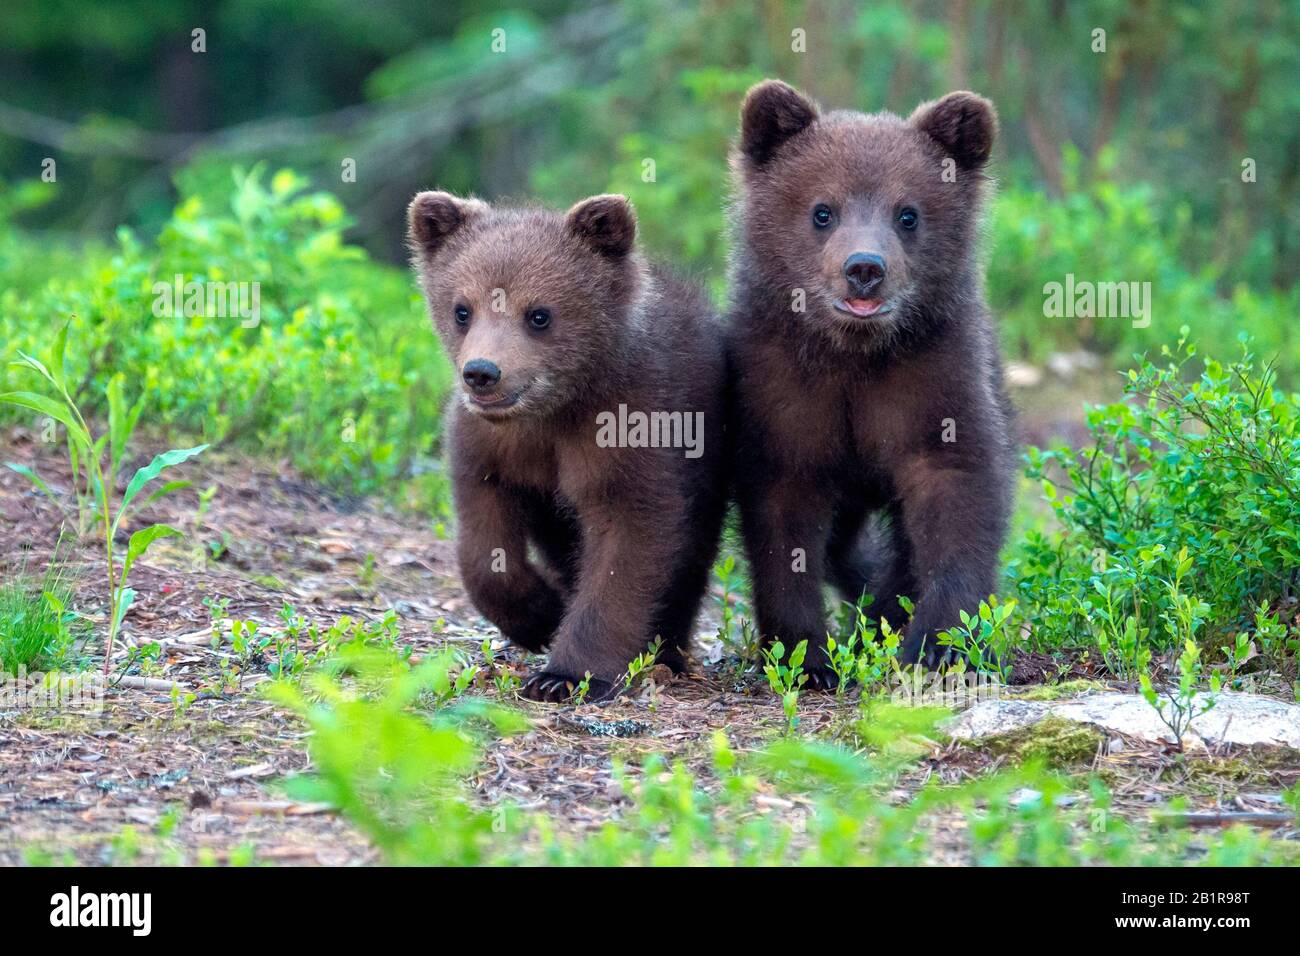 Ours brun européen (Ursus arctos arctos), deux oursons allant ensemble à travers la forêt, vue de face, Finlande, Carélia, Suomussalmi Banque D'Images